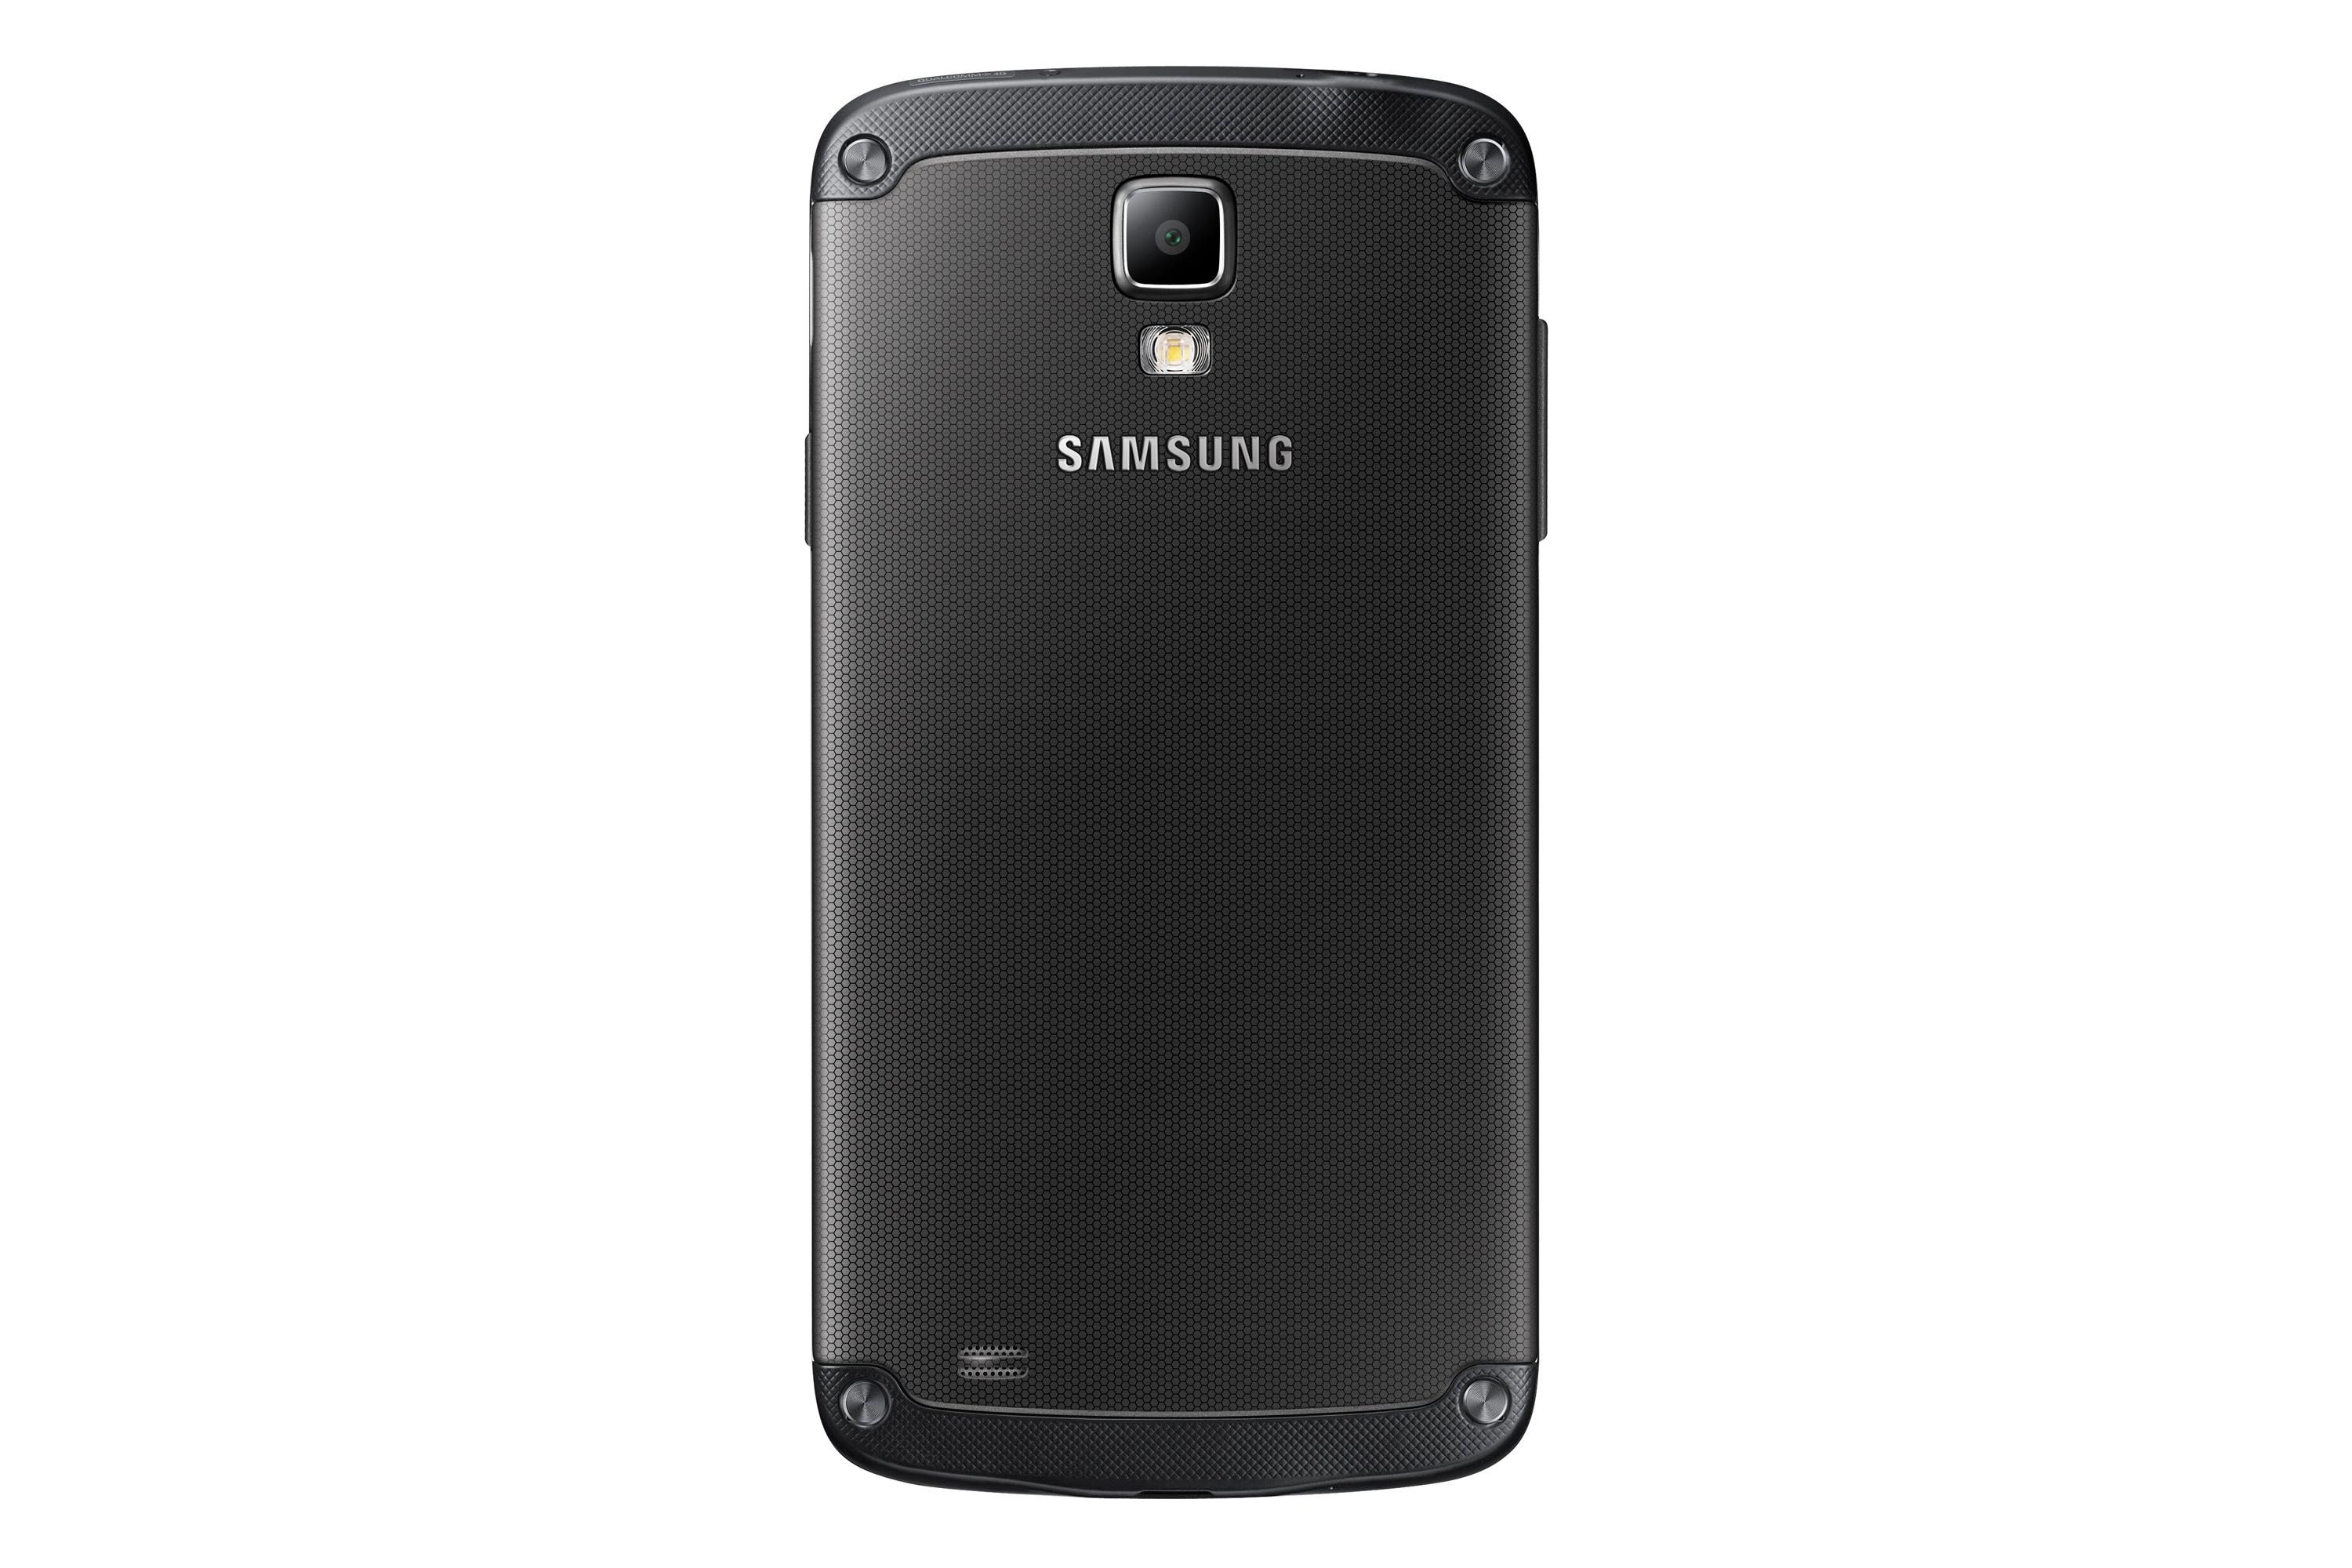 Du ser at Galaxy S4 Active er laget for å være hakket mer robust enn originalen - men den ser likevel ikke voldsomt pansret ut sammenliknet med tidligere vanntette Samsung-telefoner.Foto: Samsung